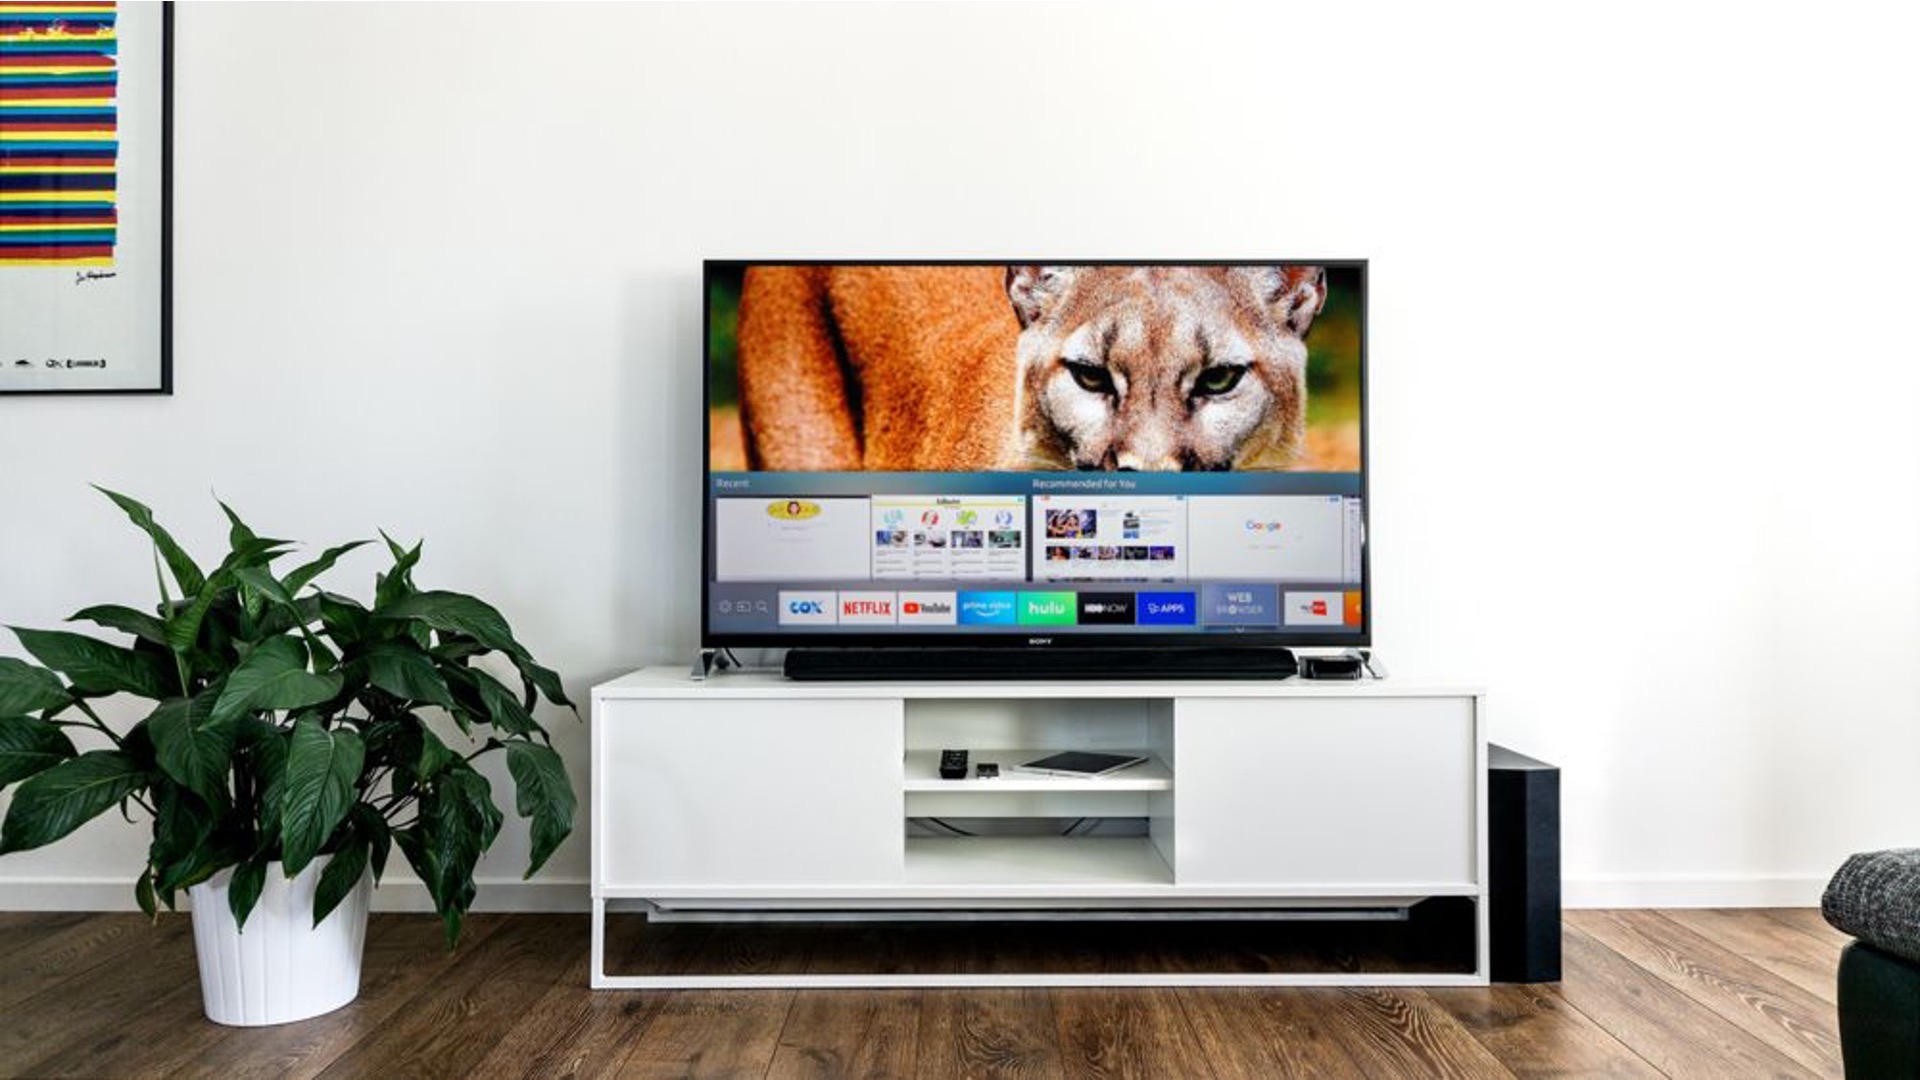 How To Cast Chrome To Samsung TV